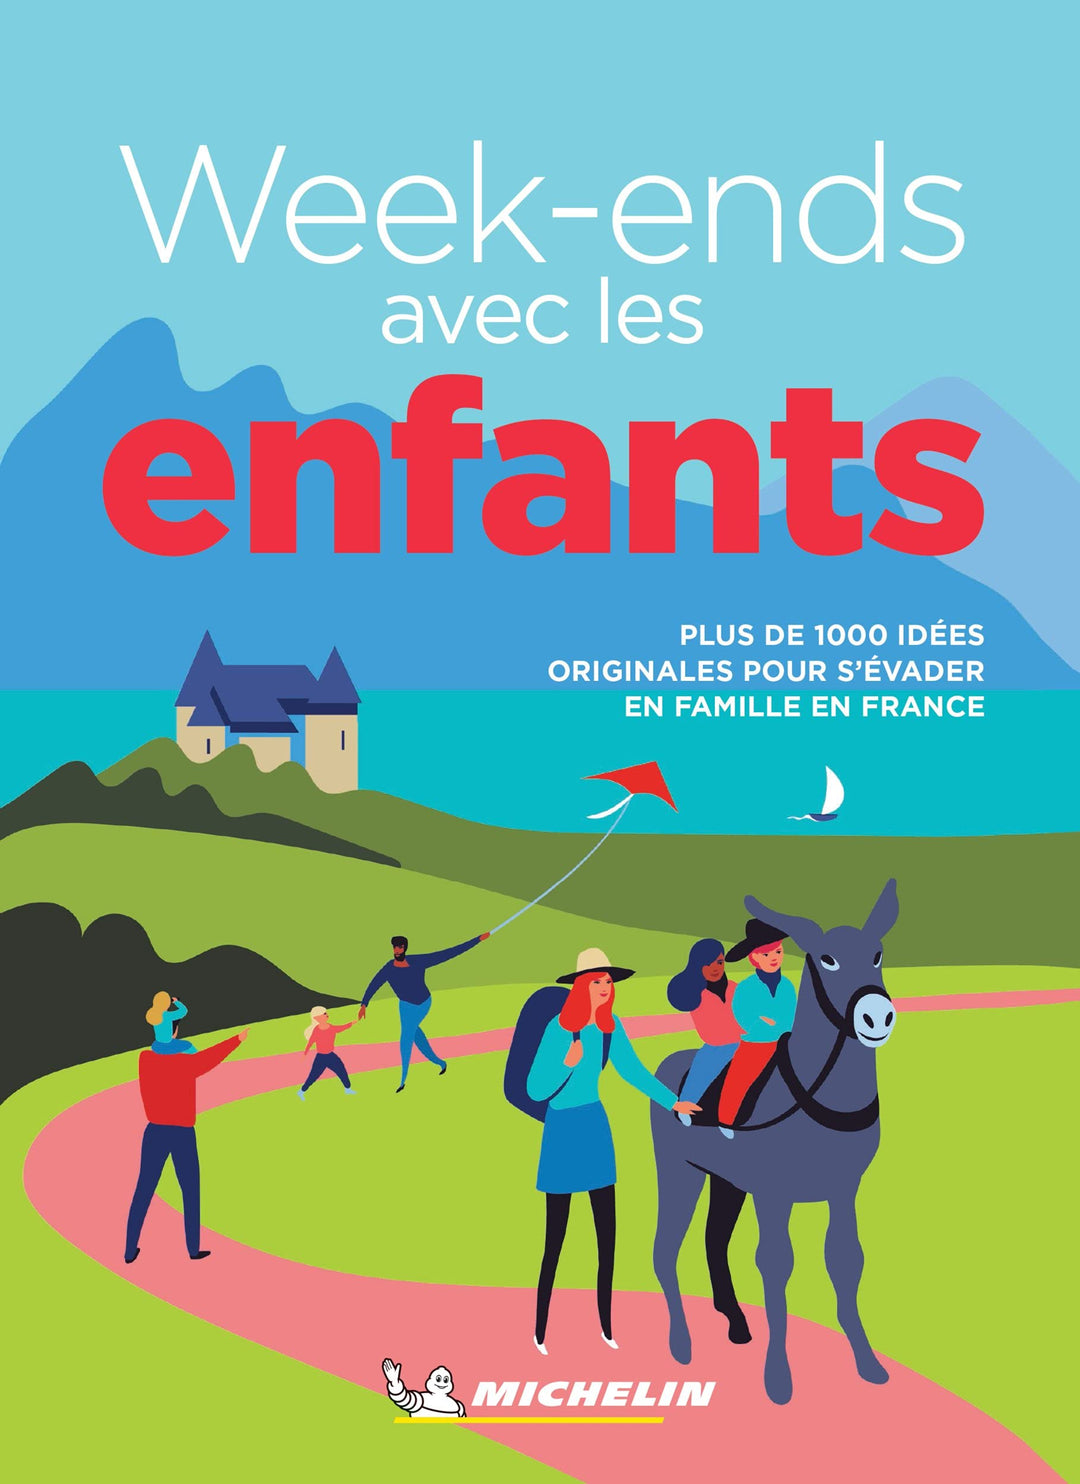 Guide de voyage - Week-ends avec les enfants : 1000 idées pour s'évader en France - Édition 2021 | Michelin guide de voyage Michelin 